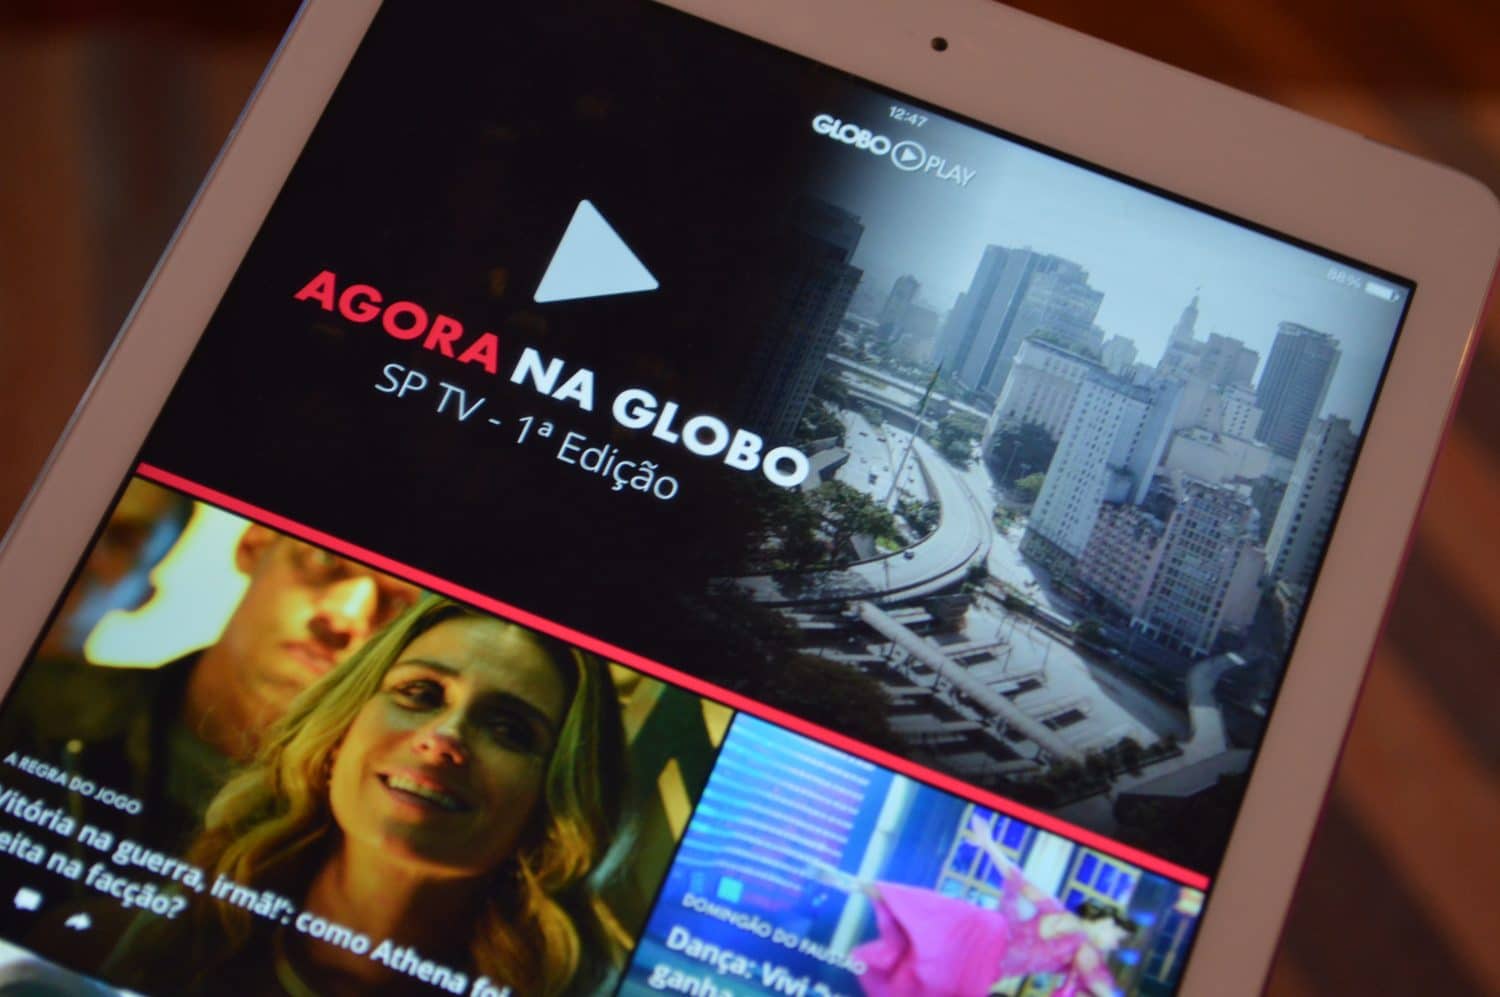 Globoplay + canais ao vivo é nova oferta de conteúdo da Globo - GKPB - Geek  Publicitário